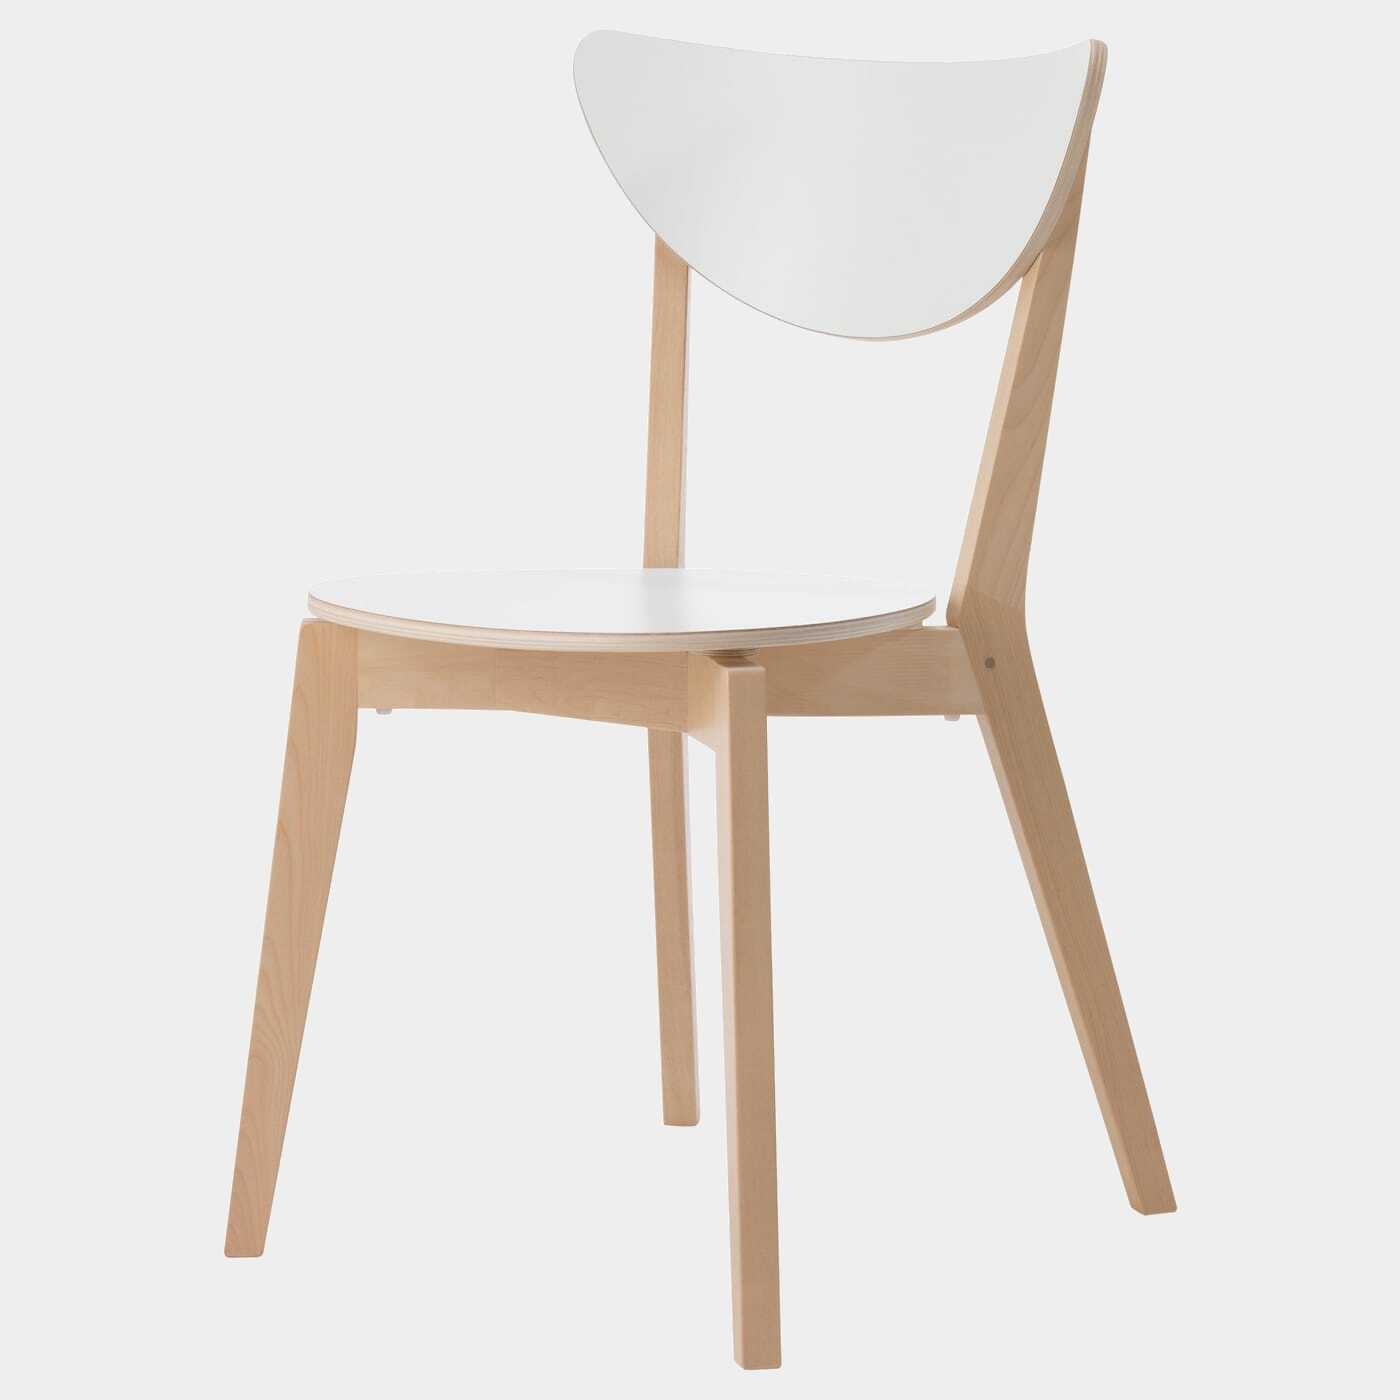 NORDMYRA Stuhl  -  - Möbel Ideen für dein Zuhause von Home Trends. Möbel Trends von Social Media Influencer für dein Skandi Zuhause.